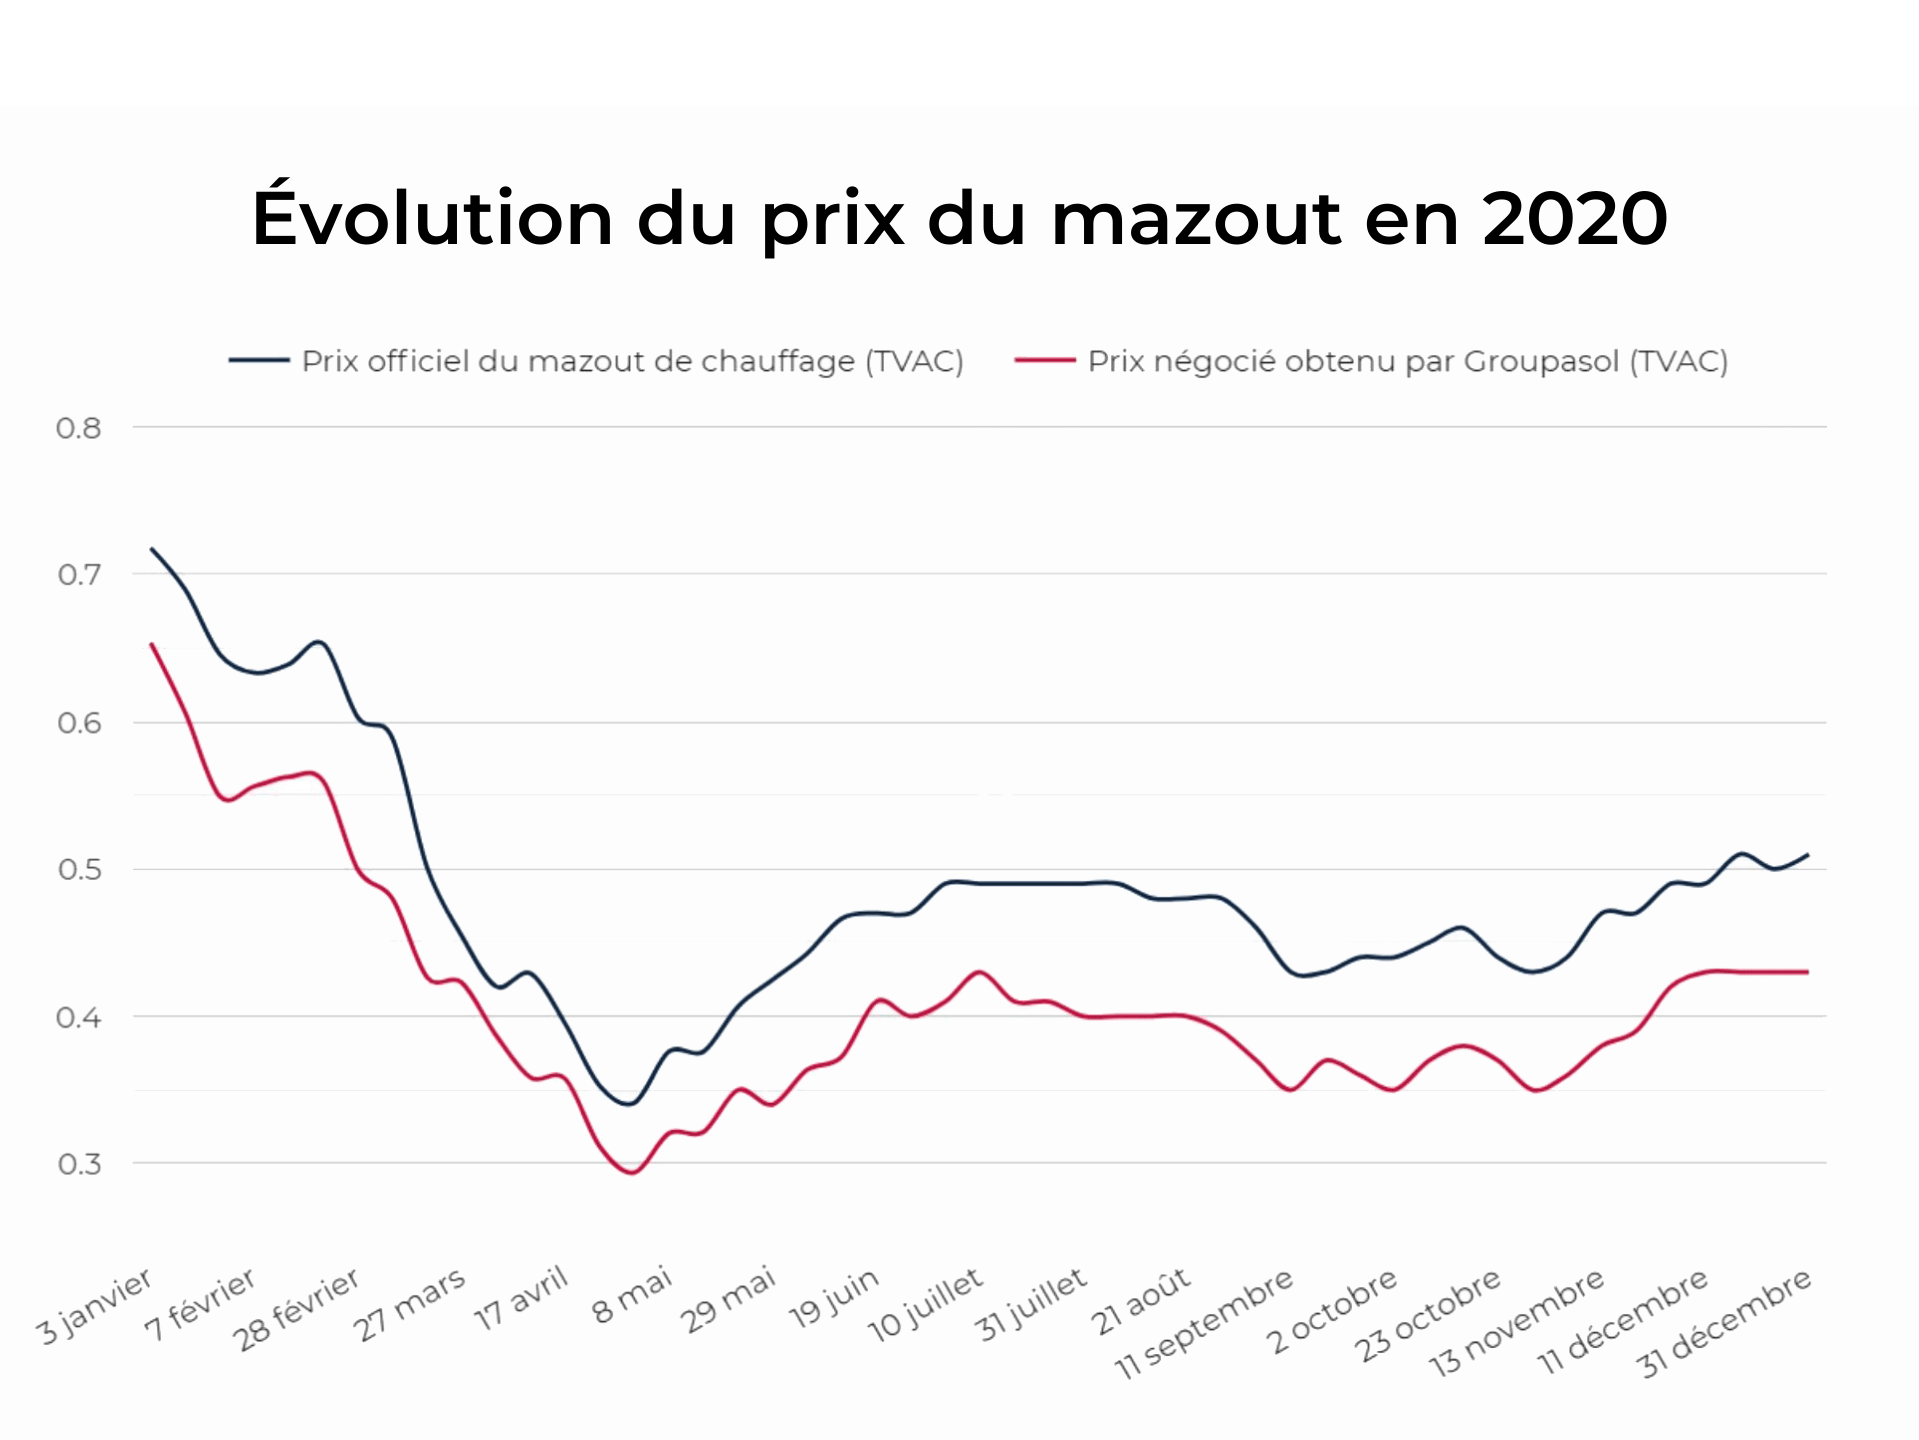 Évolution du prix u mazout en 2020